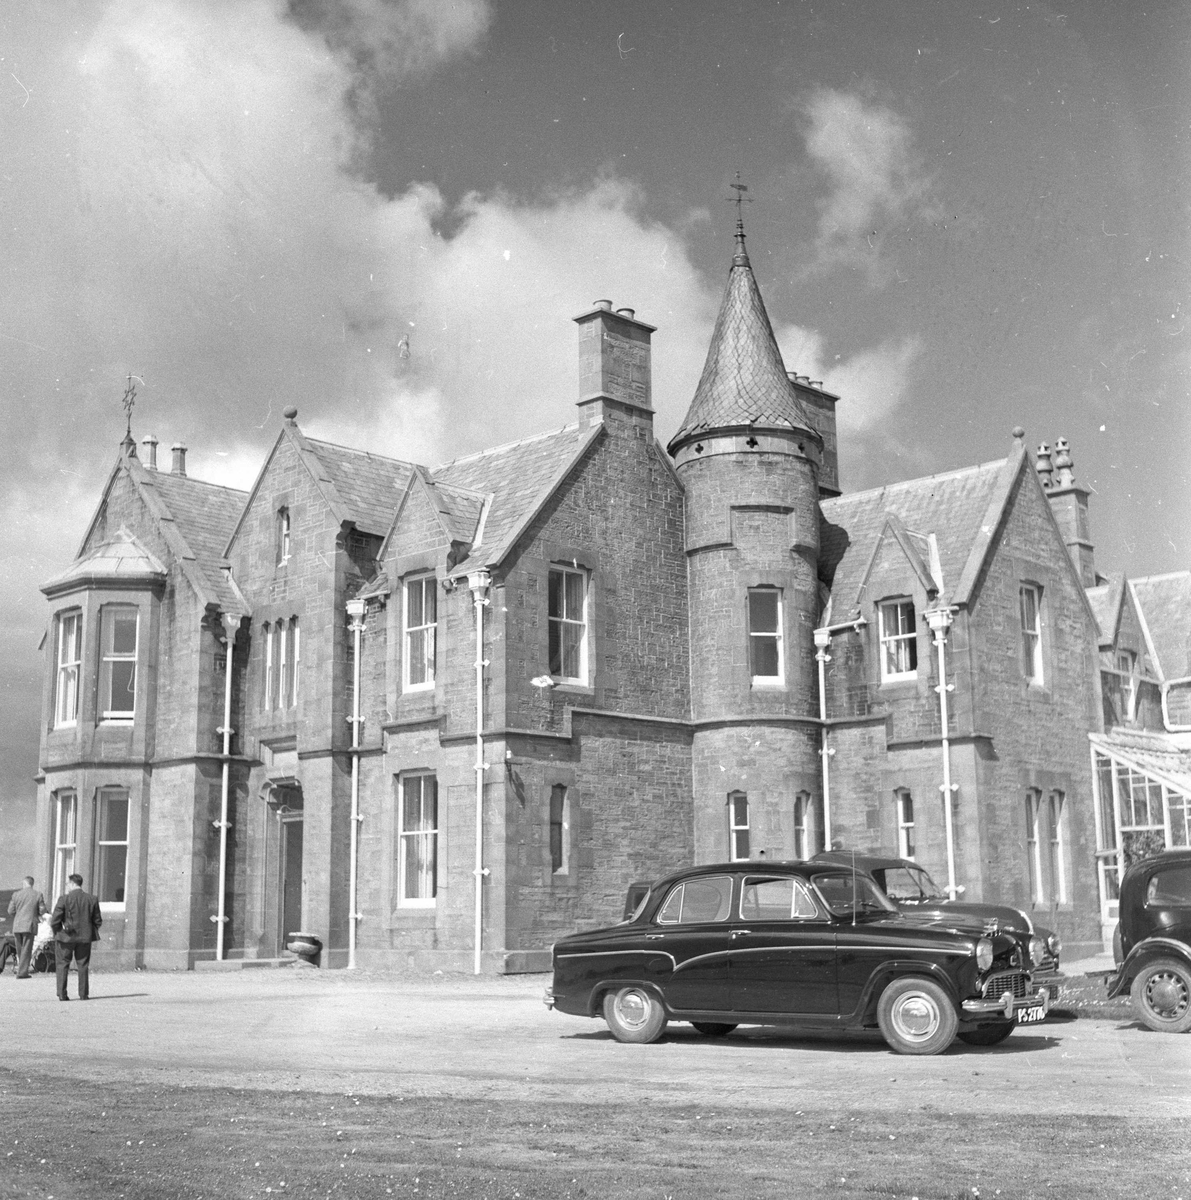 Pigghåfiske på Shetland.
Shetland, 14-22. mai 1958, vakker eiendom, bil i forgrunnen.